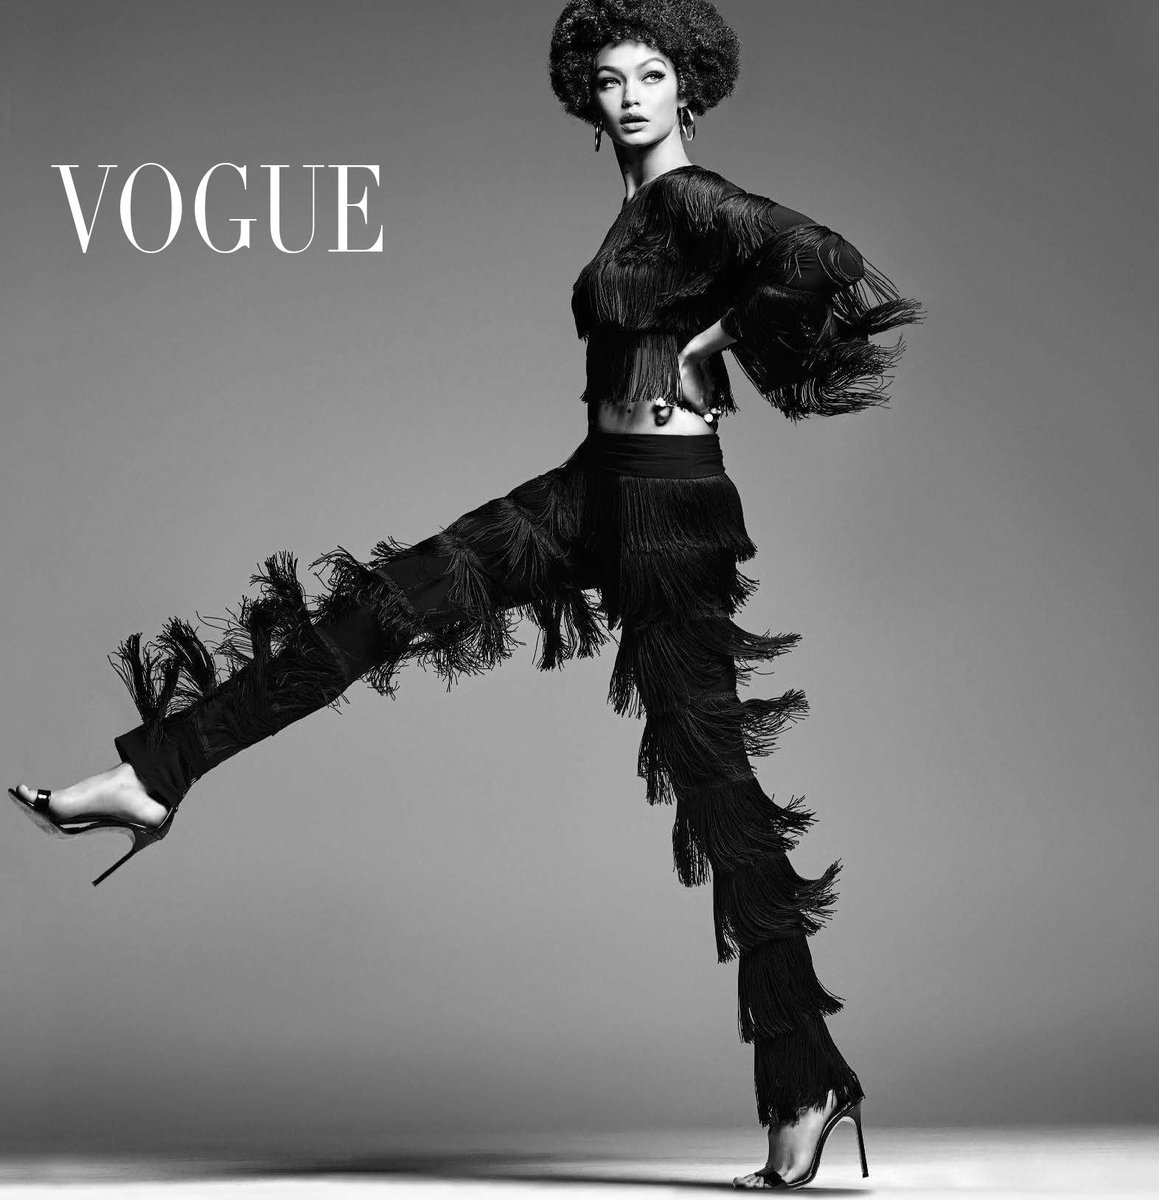 Gigi Hadid for Vogue Italia in 2015